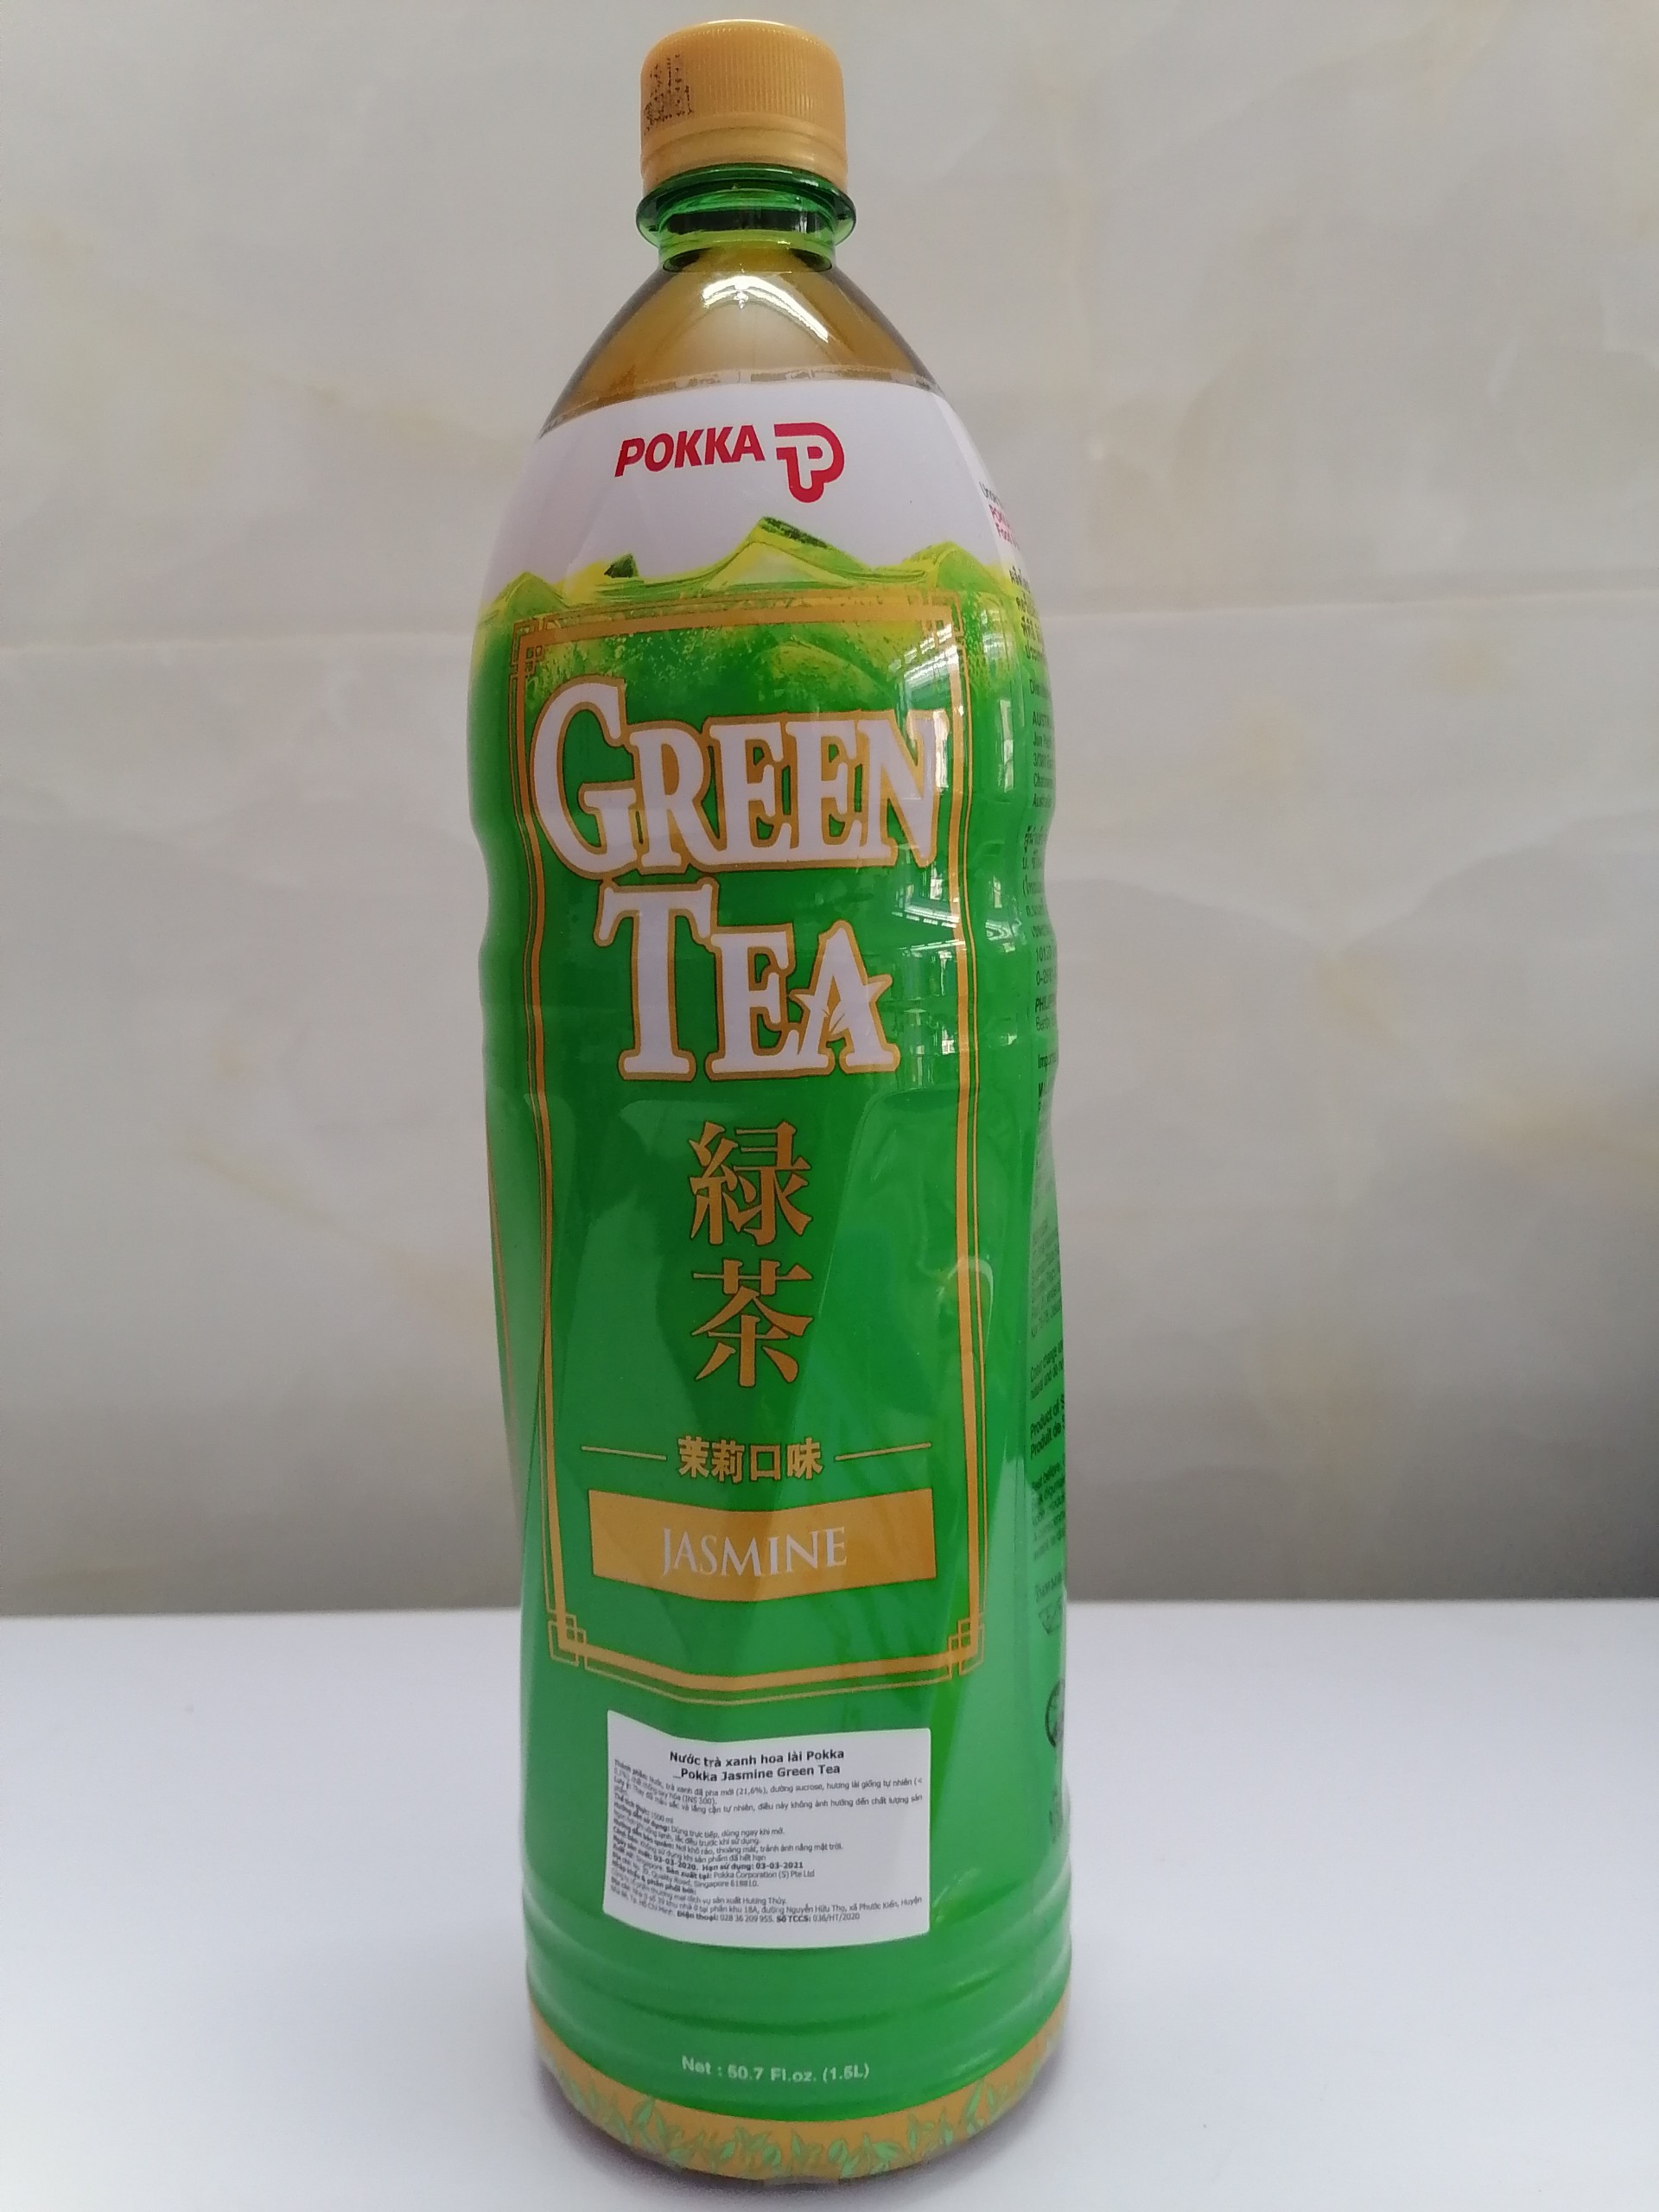 Chai 1.5 Lít NƯỚC TRÀ XANH HOA LÀI Singapore POKKA Jasmine Green Tea halal